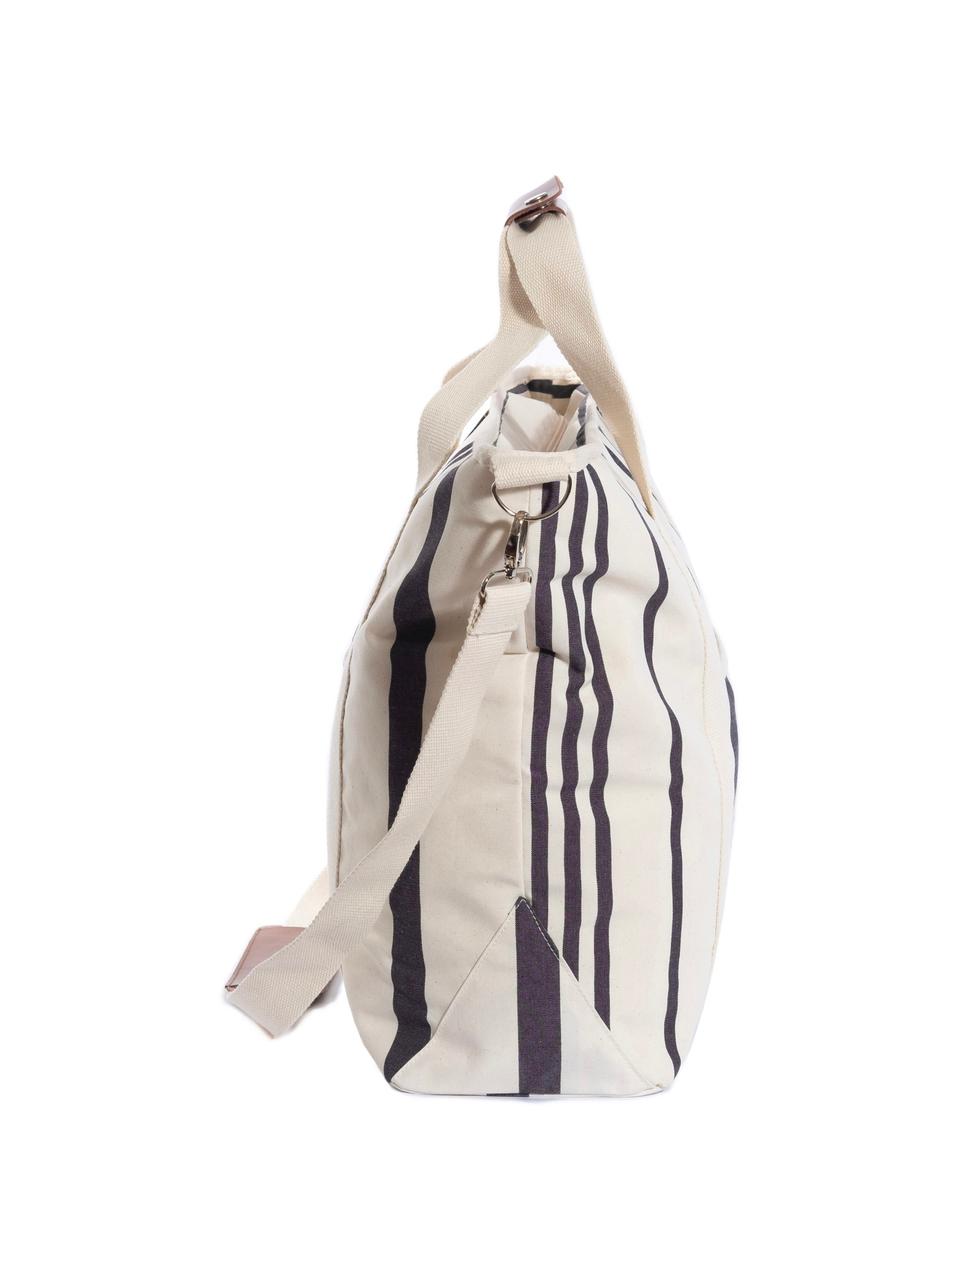 Chladicí taška Strand, 40% bavlna, 40% polyester, 15% voděodolný vinyl, 5% kůže, Krémově bílá, černá, Š 41 cm, V 51 cm